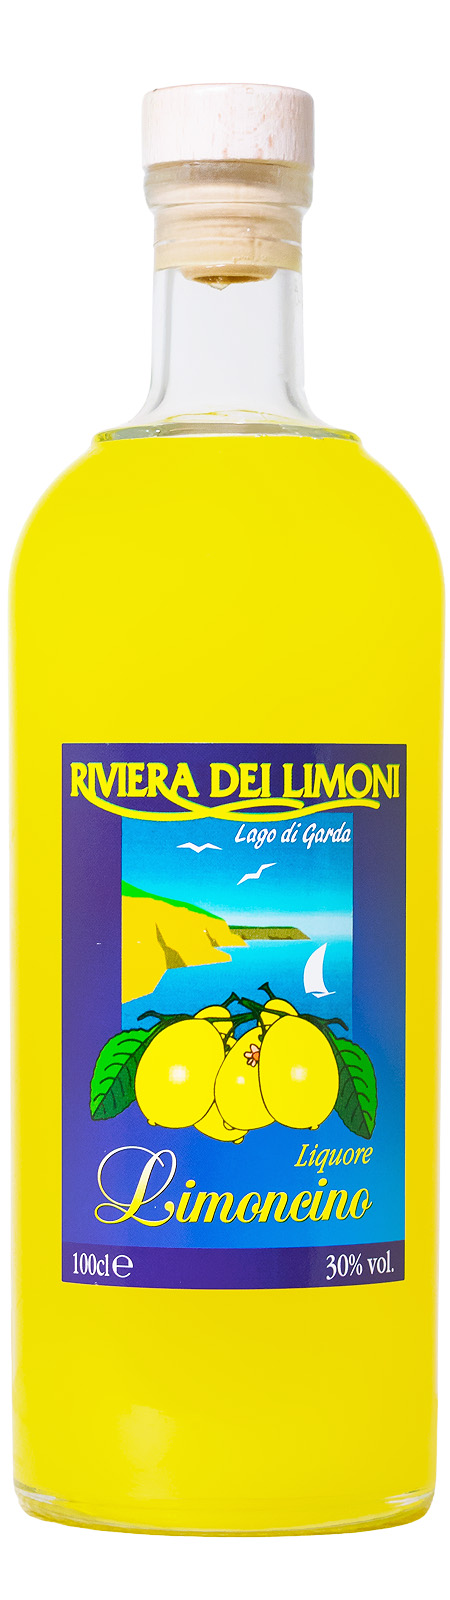 Marzadro Limoncino Riviera dei Limoni - 1 Liter 30% vol